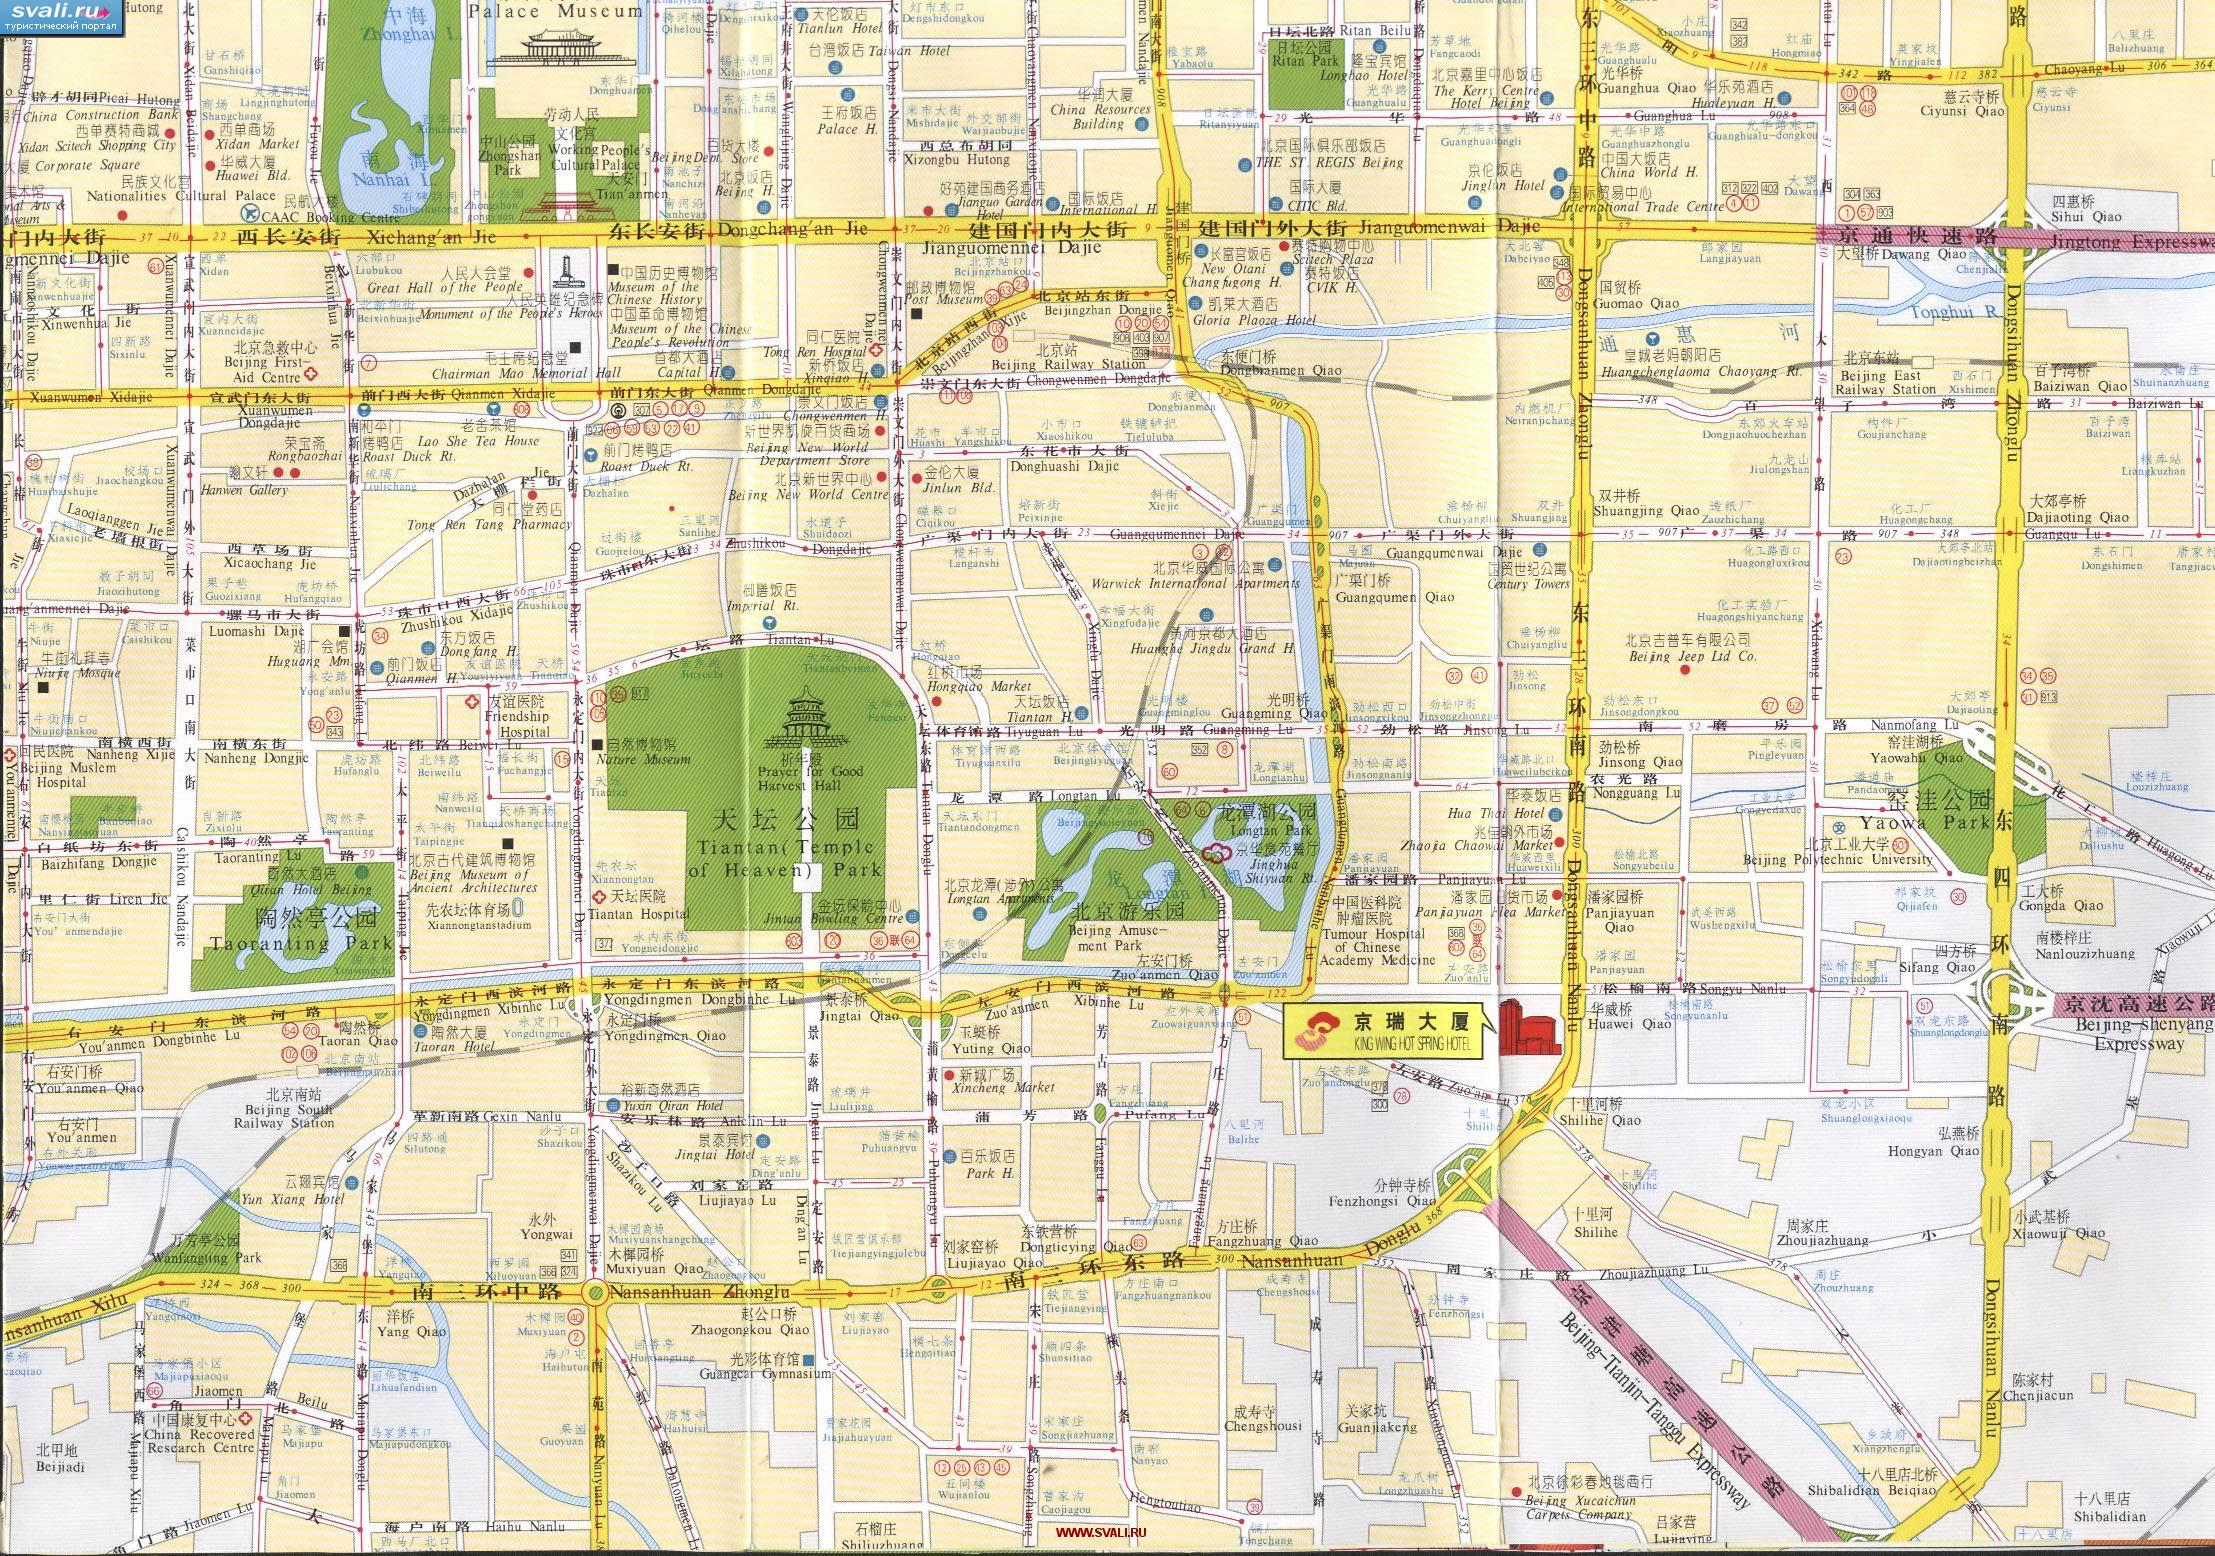 Подробная туристическая карта с маршрутами автобусов области вокруг Храма Неба (Temlpe Of Heaven) Пекина, столицы Китая (англ., кит.)